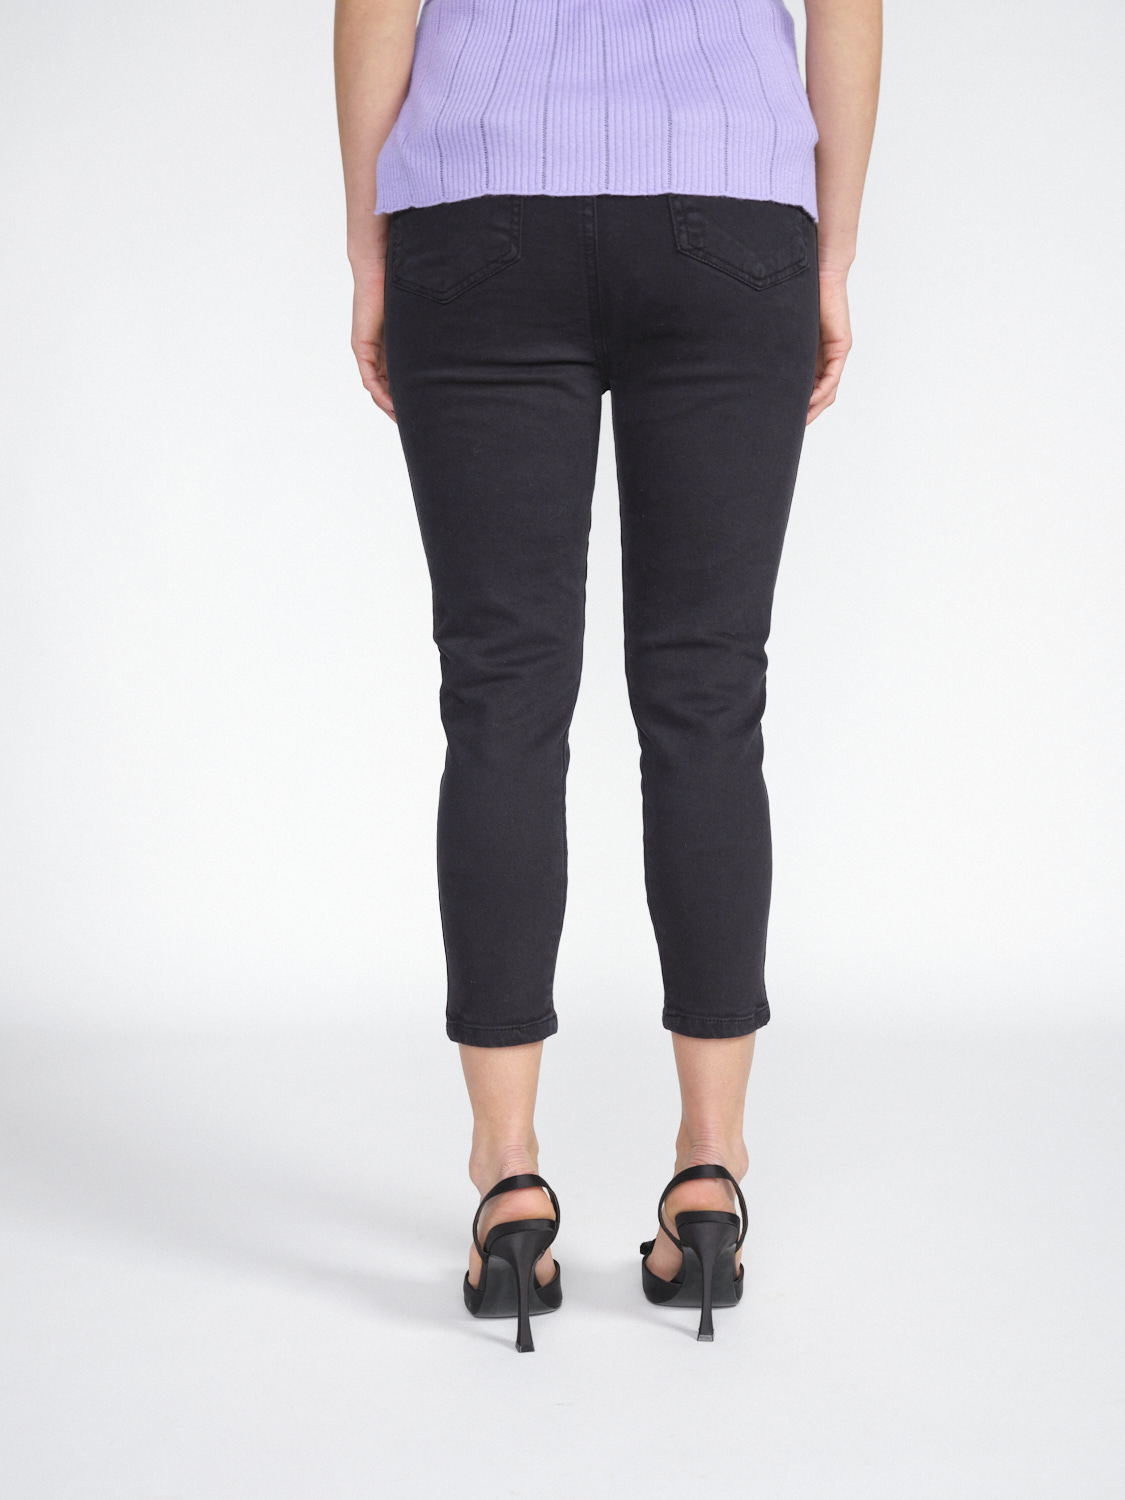 Gitta Banko Pants Harlow - Pantalon trois-quarts stretch en coton   noir XS/S